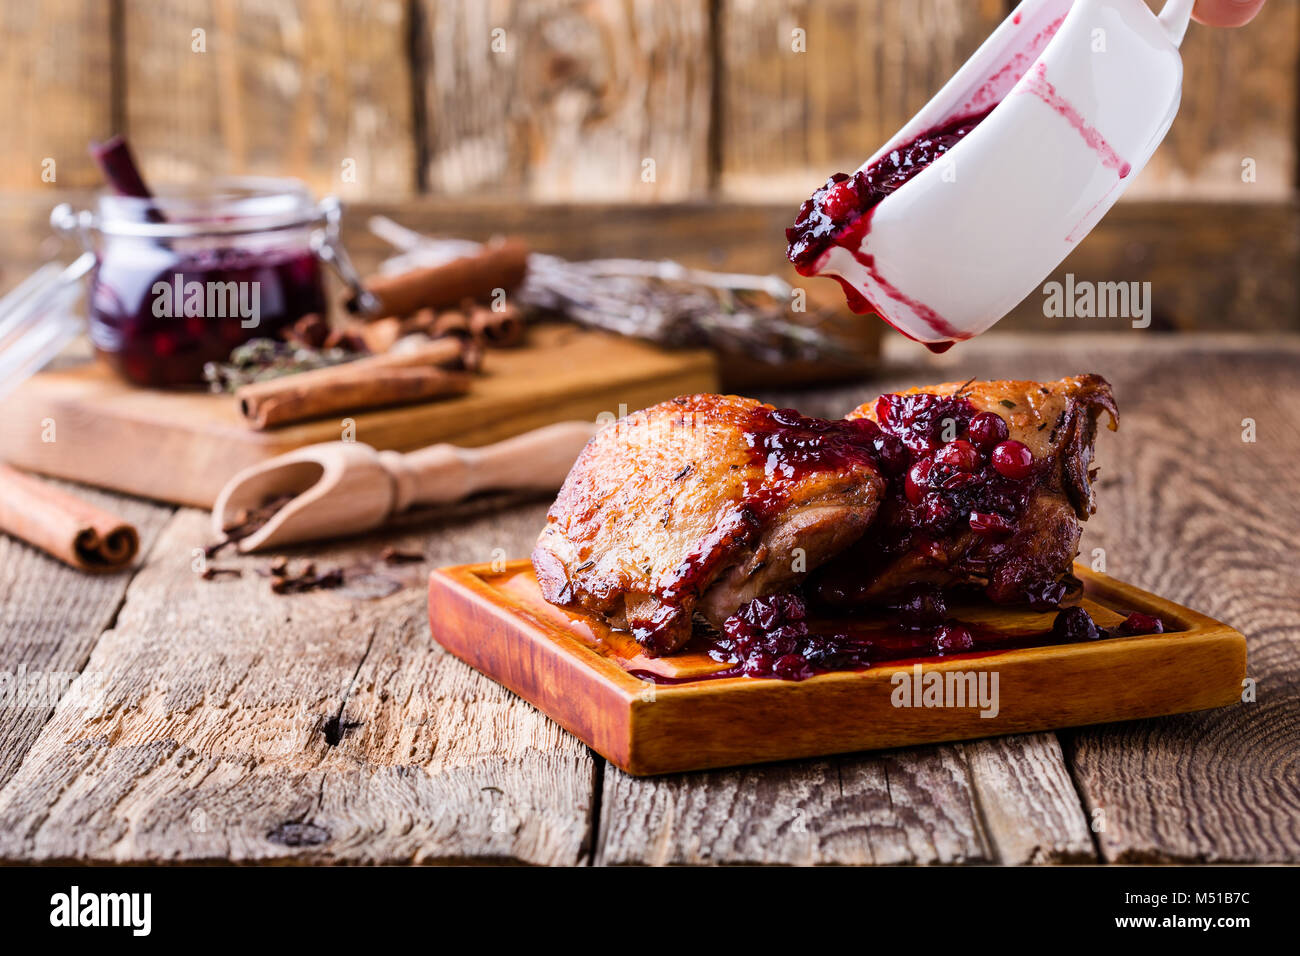 Pollo arrosto gambe sul bordo di taglio servito con salsa di mirtilli su tavola in legno rustico Foto Stock